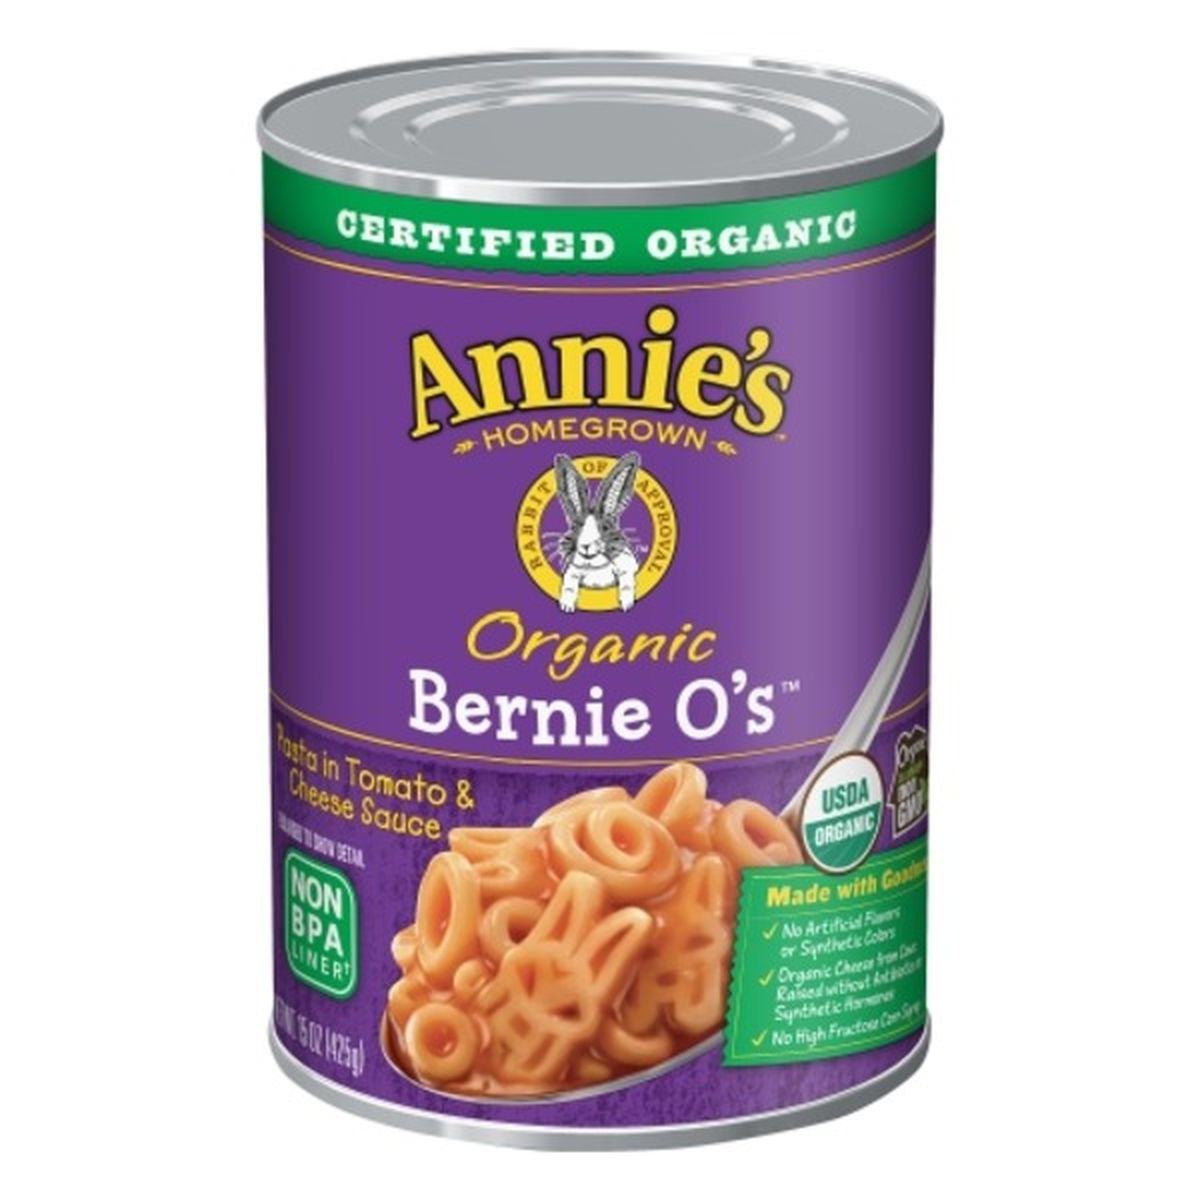 Calories in Annie's Pasta, Organic, Bernie O's